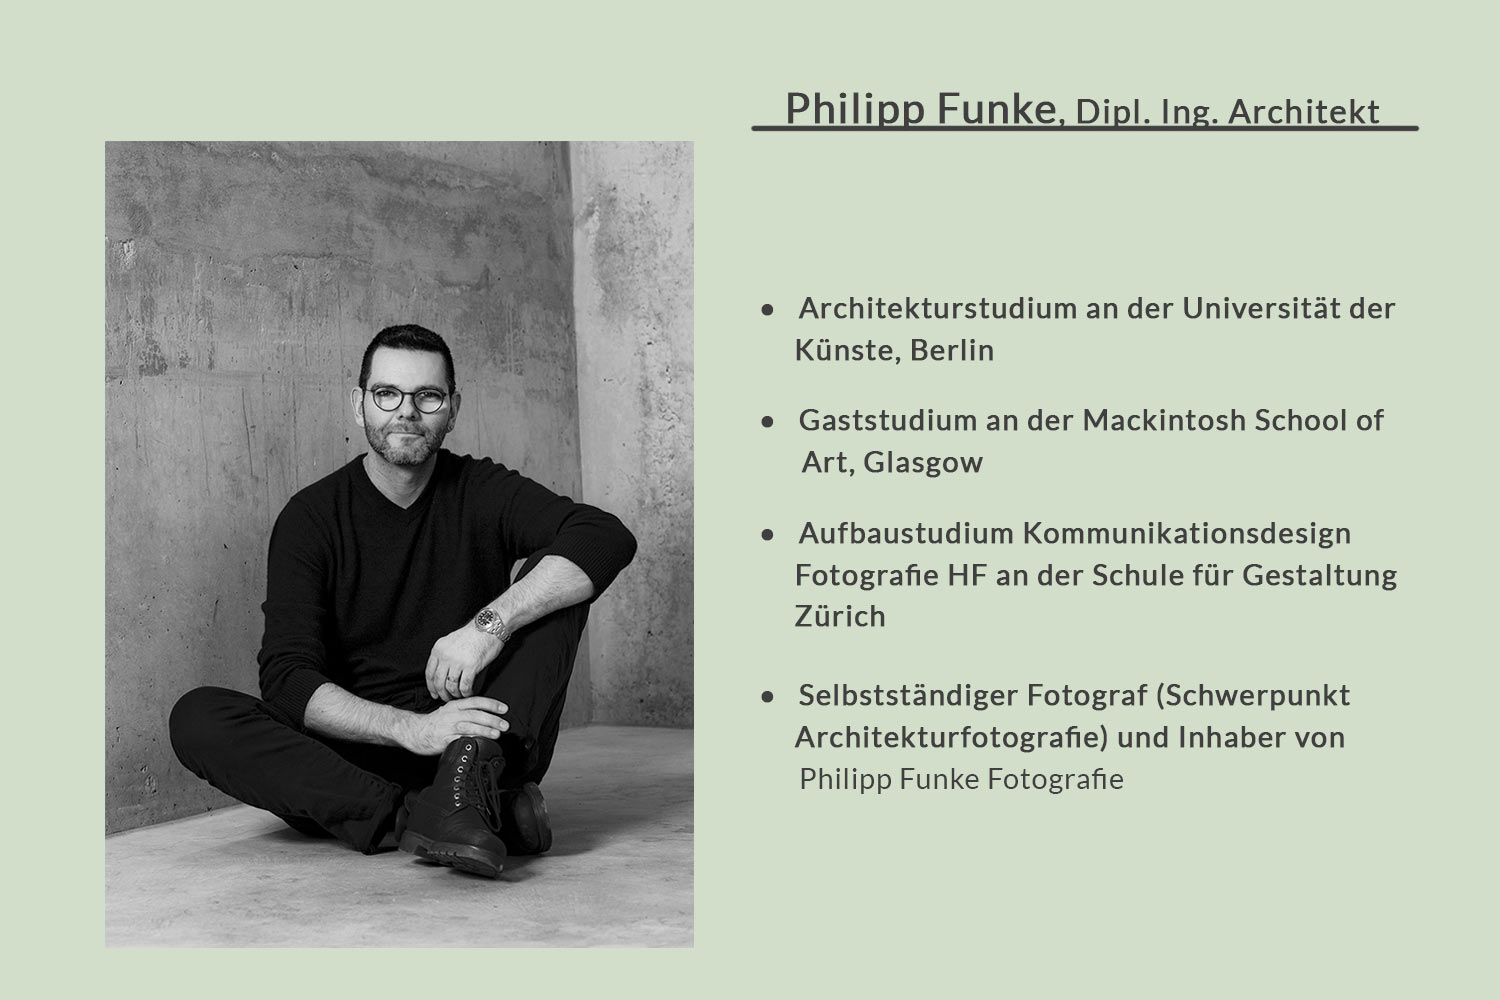 Lebenslauf von Philipp Funke Architekturfotograf und Dipl. Ing. Architekt